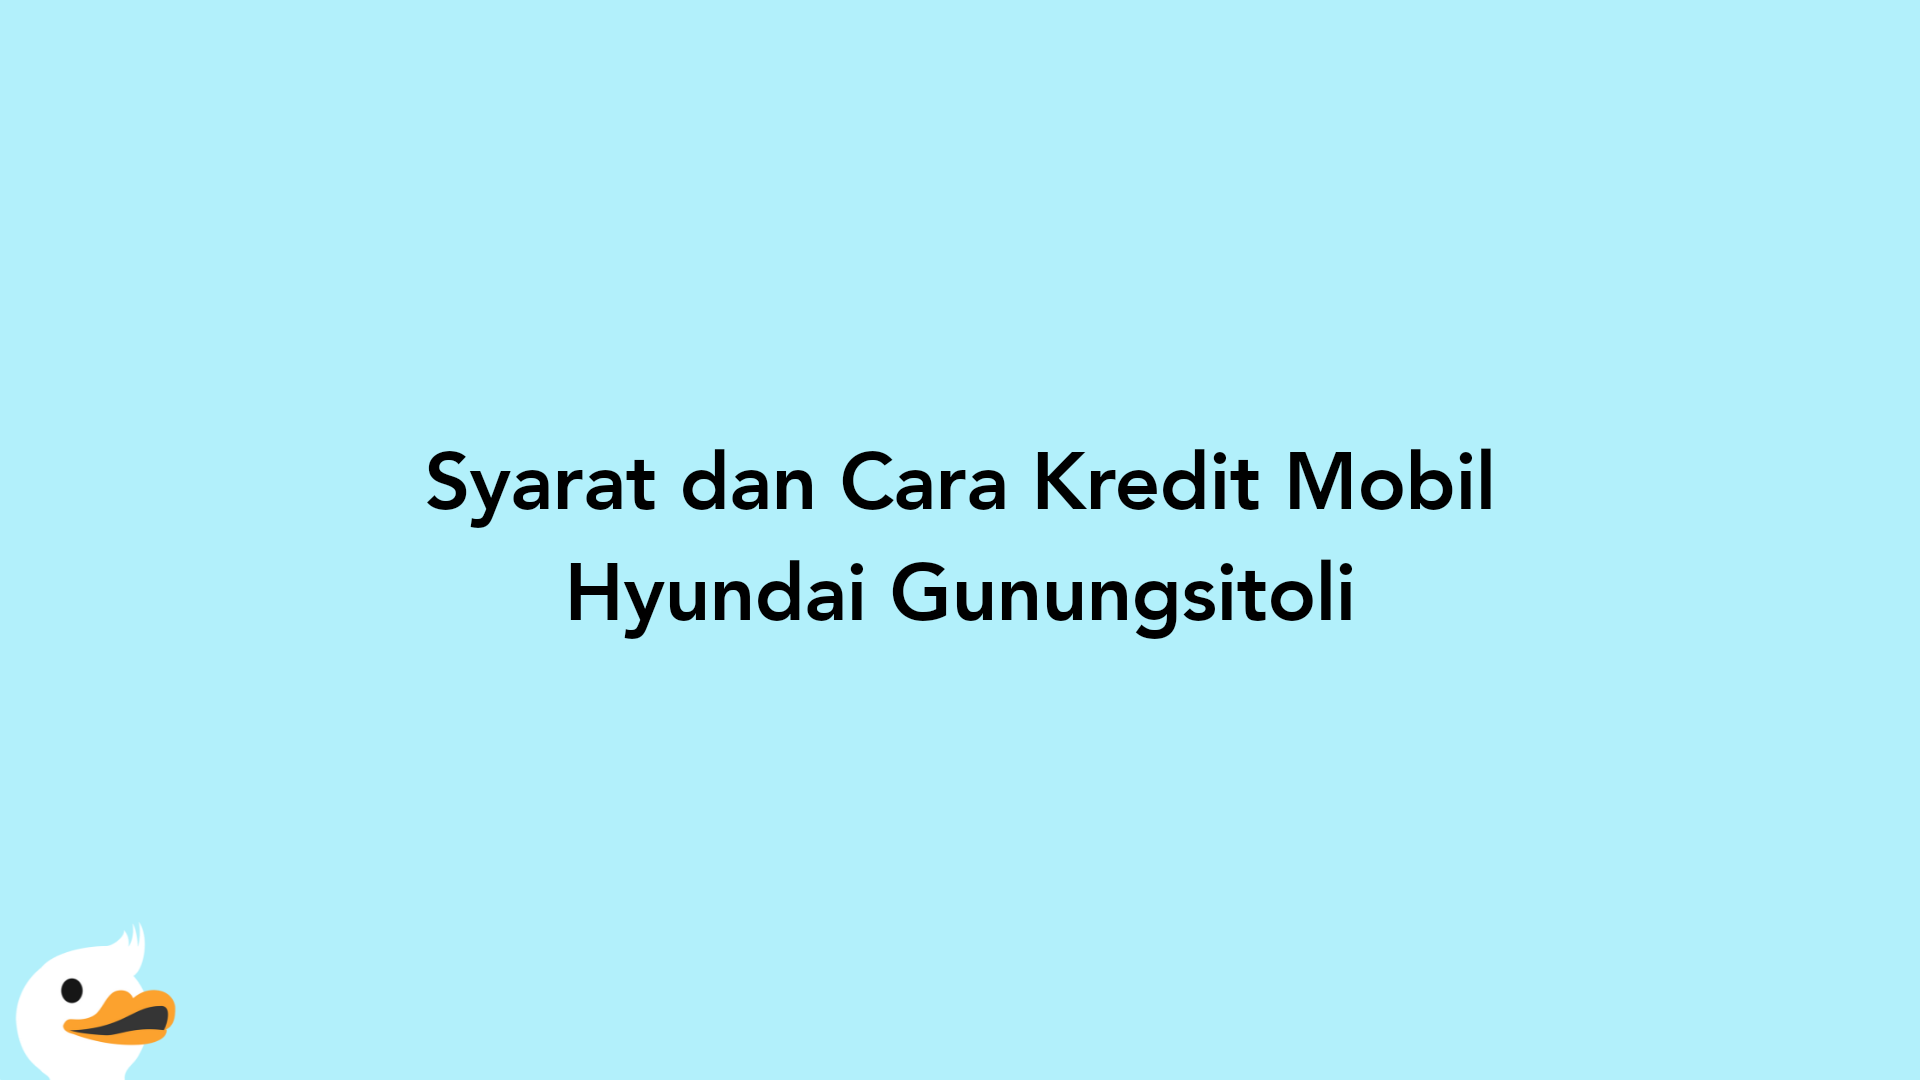 Syarat dan Cara Kredit Mobil Hyundai Gunungsitoli